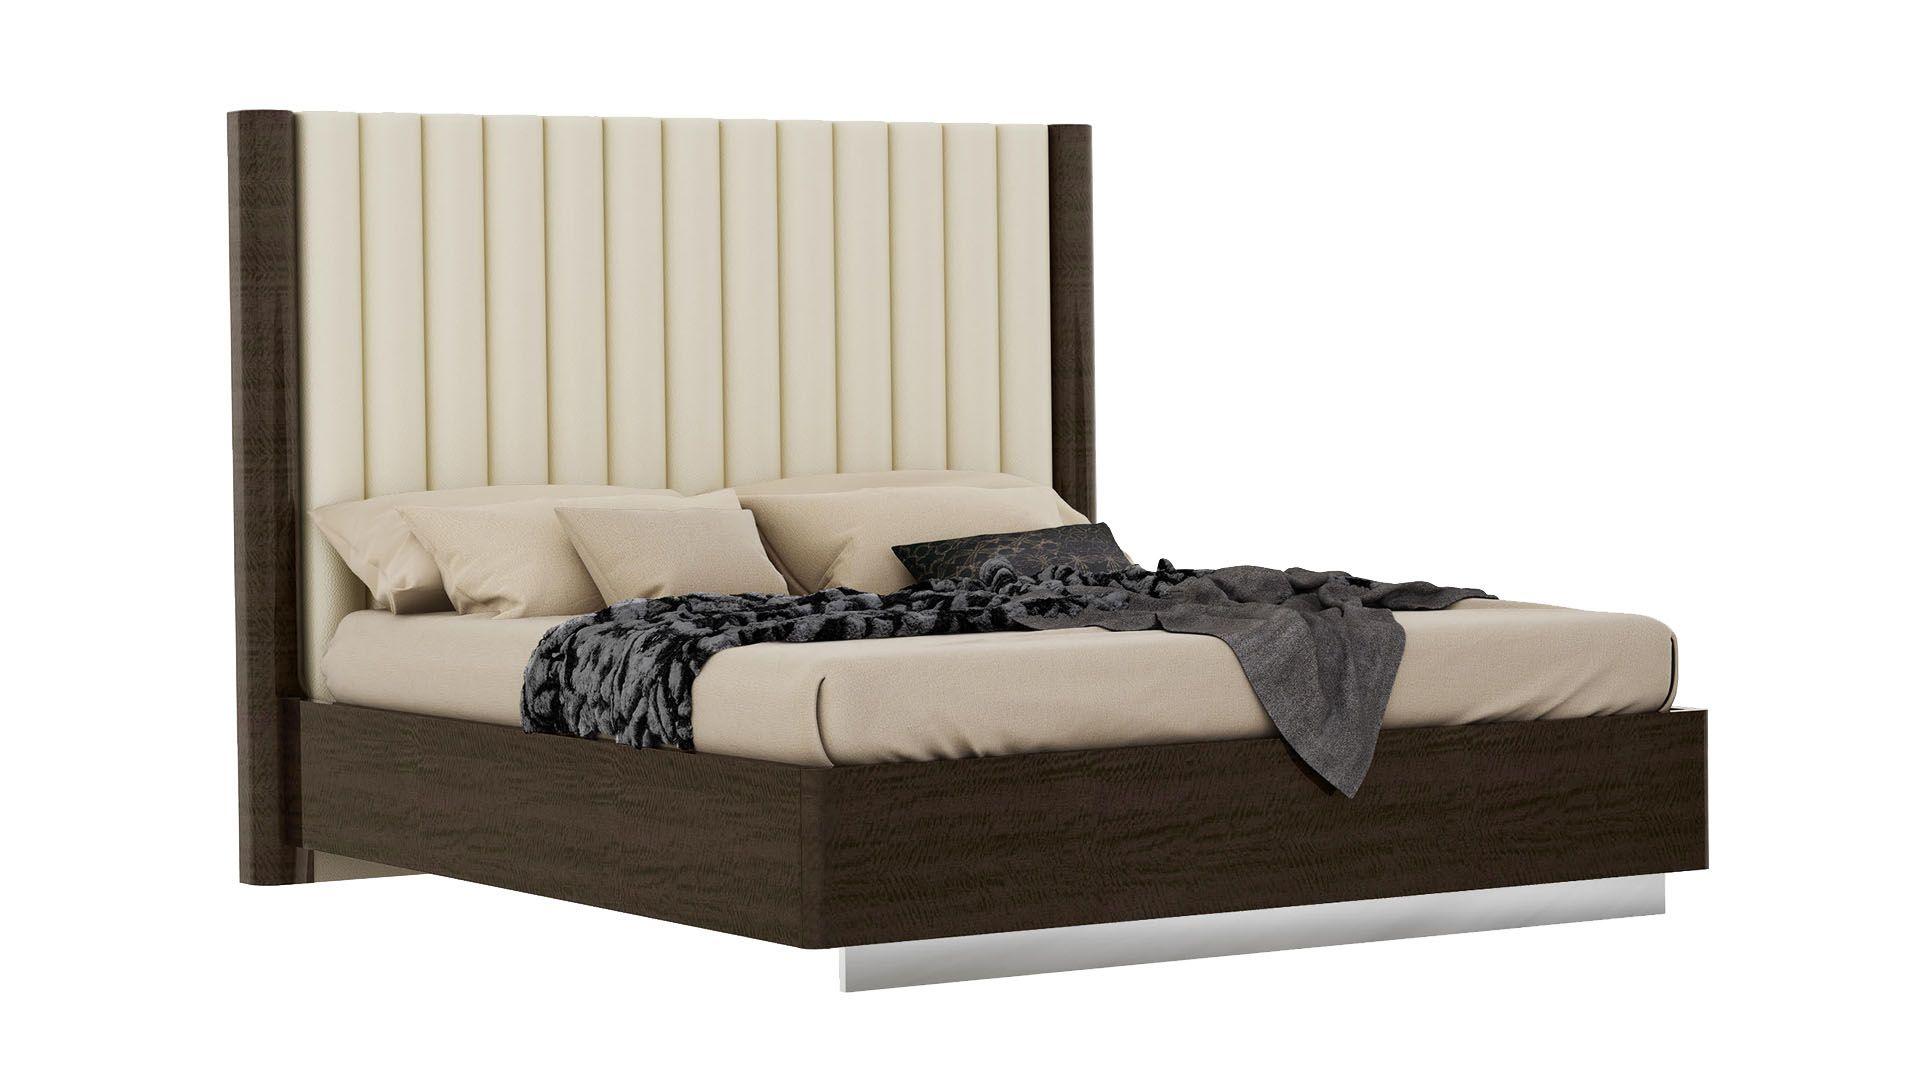 

    
American Eagle Furniture P115 Platform Bedroom Set Light Beige/Dark Walnut P115-BED-Q-SET-3
